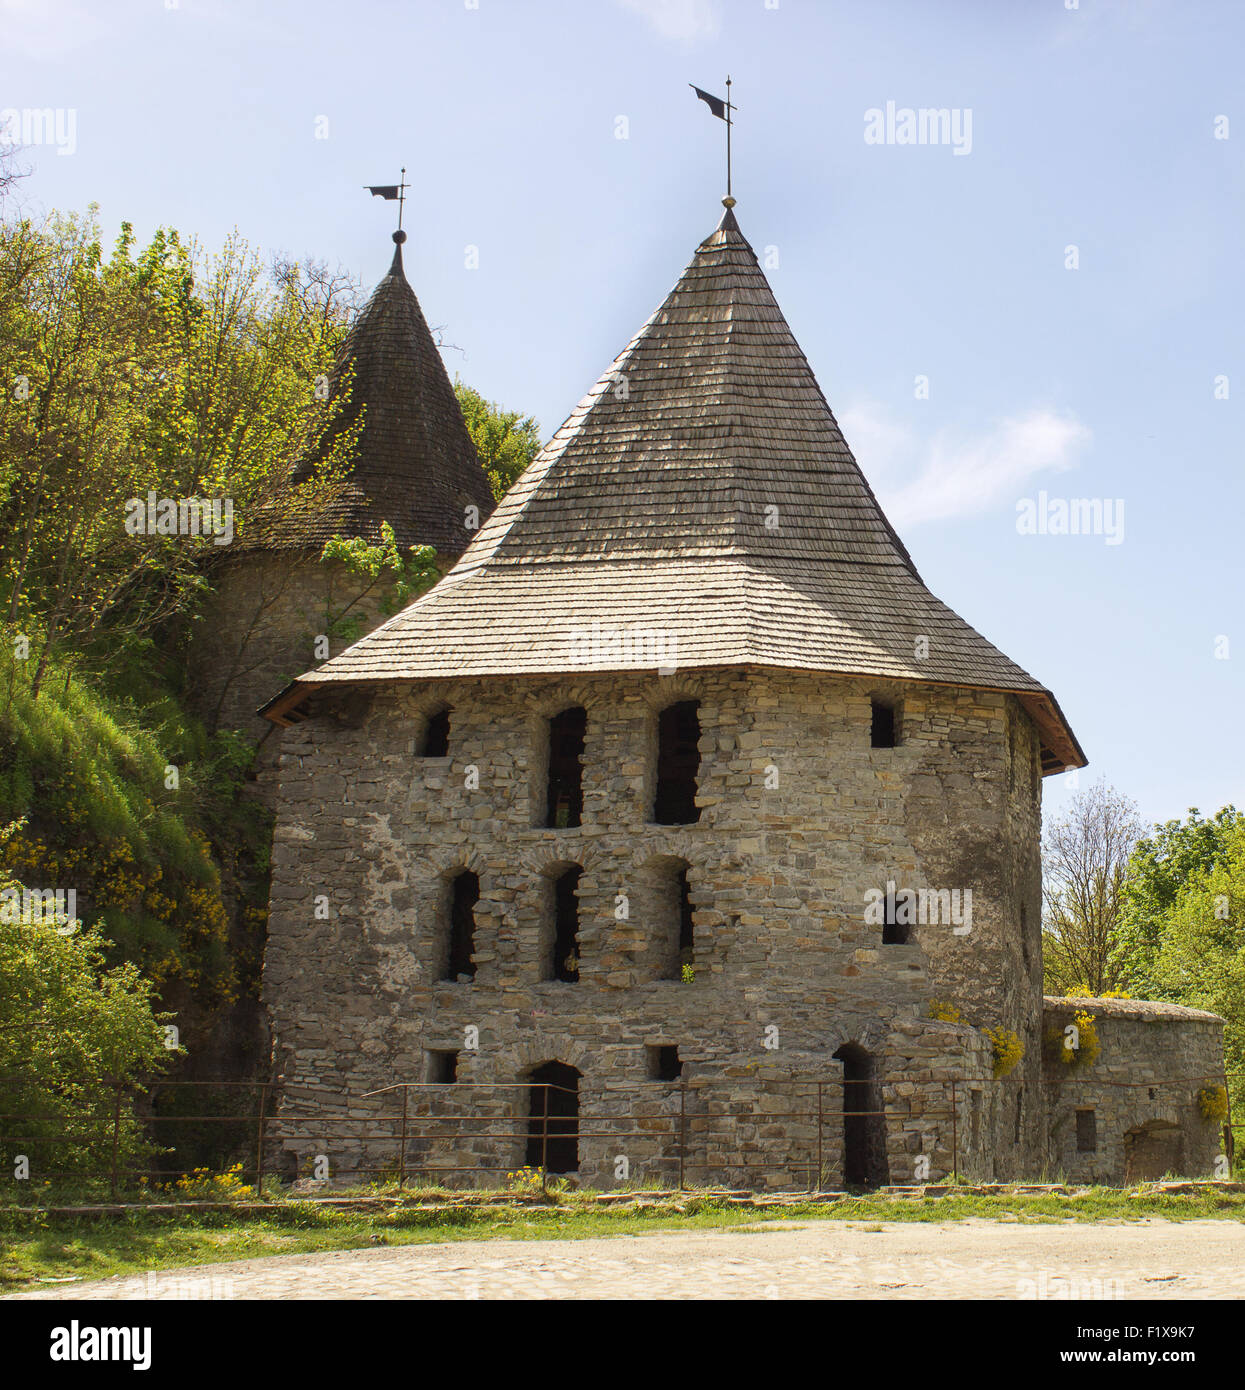 Ancienne tour de château médiéval. Banque D'Images